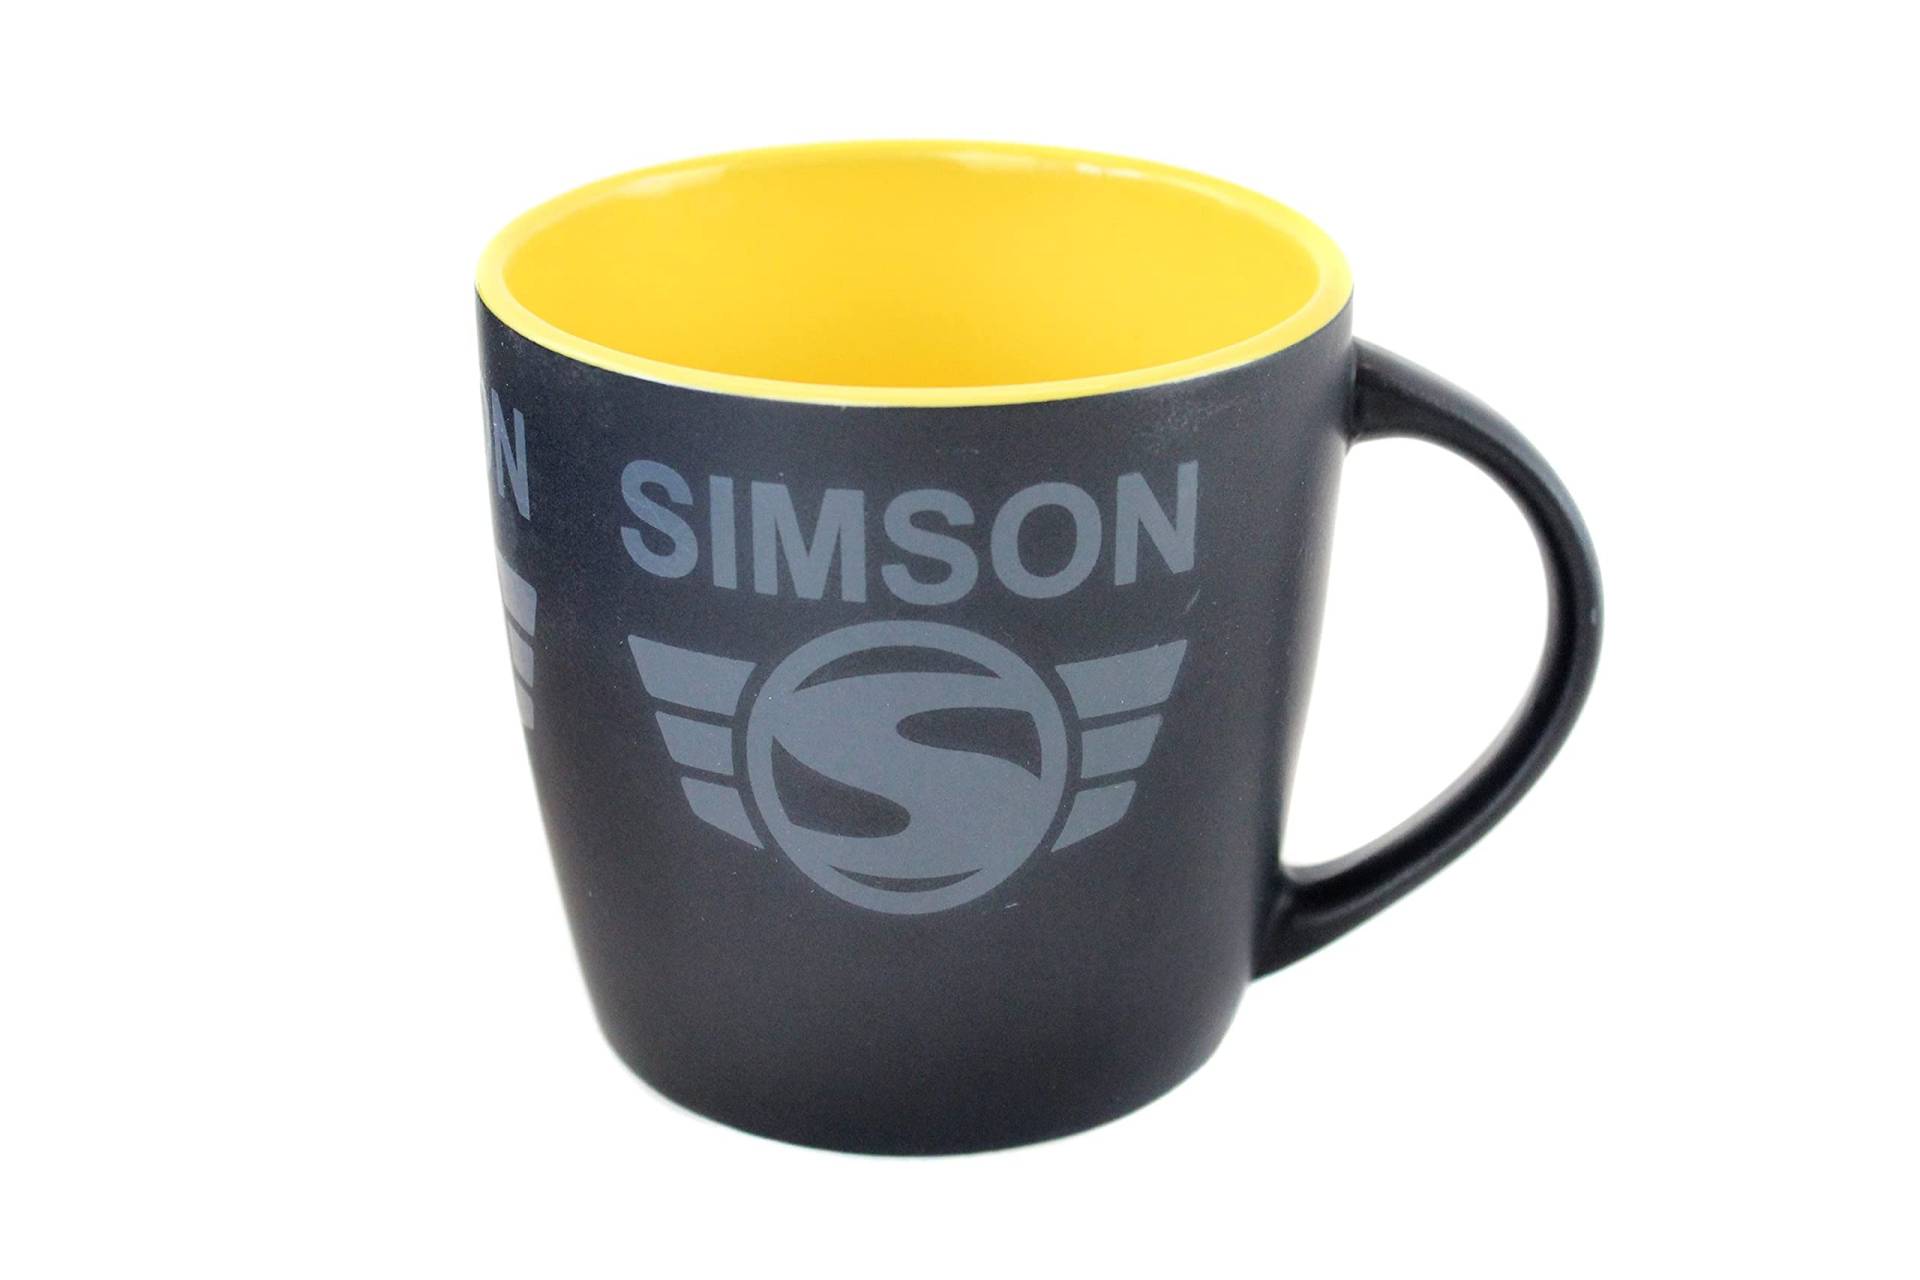 Tasse, Kaffeetasse mit Simson Motiv in Schwarz Gelb, Sammleredition, Fassungsvermögen 250ml, MZA-Fanartikel von MZA